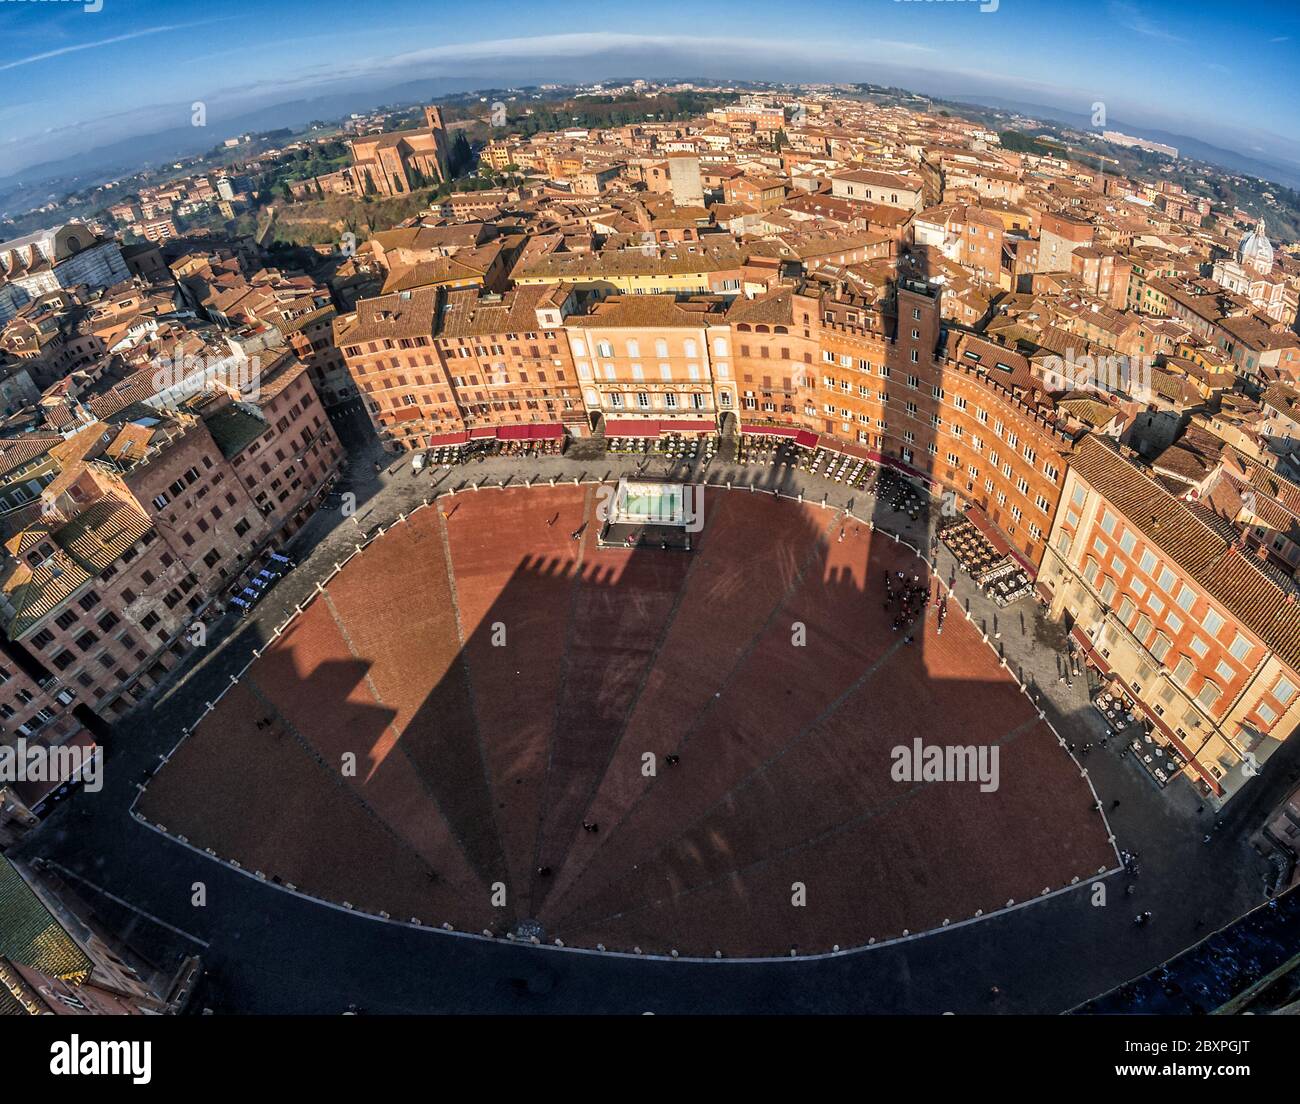 La célèbre Siena piazza del Campo vue depuis le sommet de la tour avec un coup de vue sur les poissons Banque D'Images